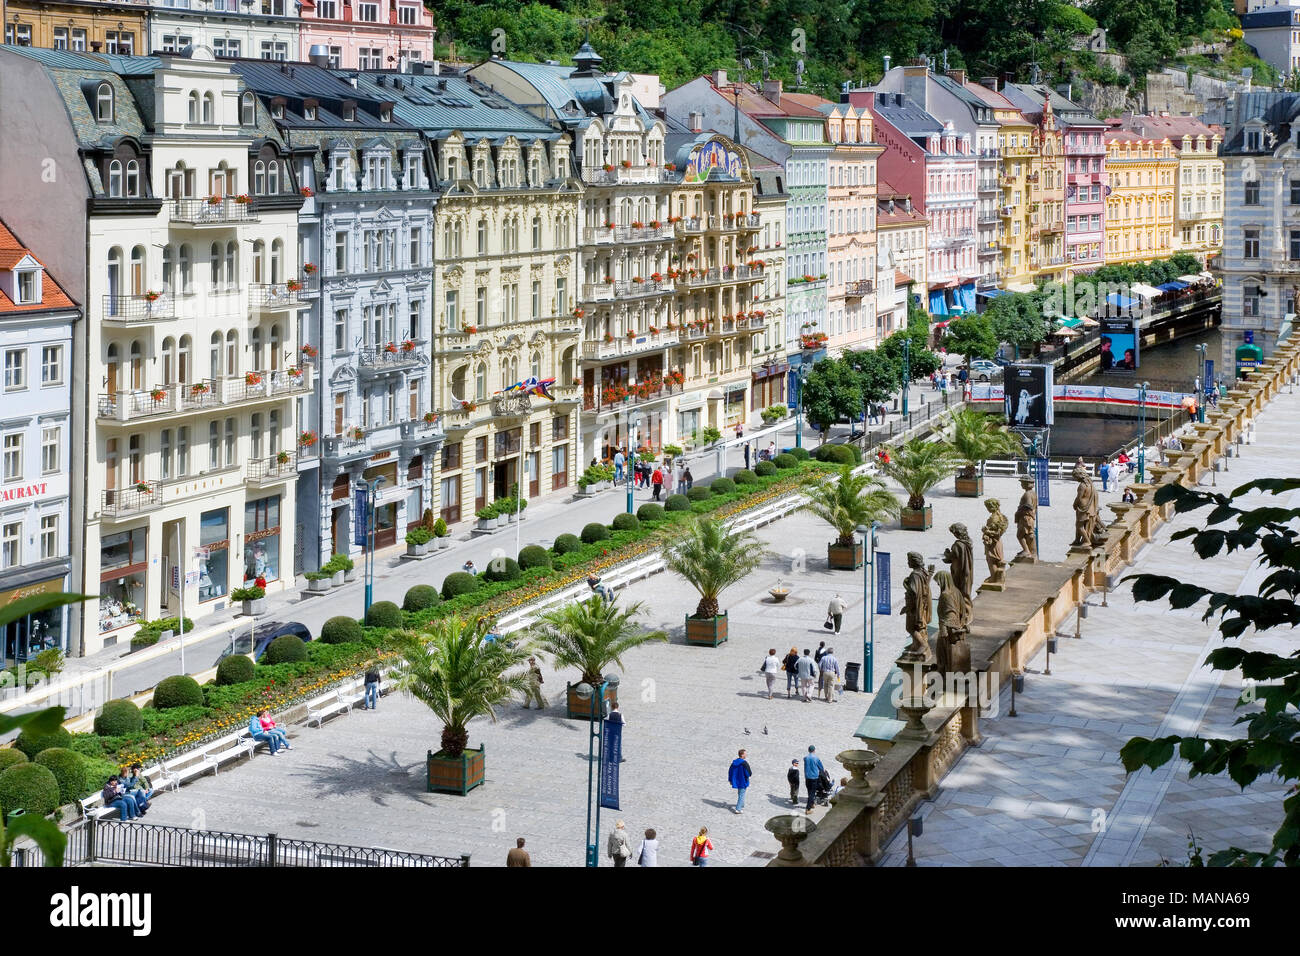 Karlsbad, Tschechische Republik - Apr 6, 2017: vom historischen Zentrum im Kurort Karlovy Vary, Westböhmen, Tschechische Republik. Berühmte historische Quellen, die meisten Stockfoto